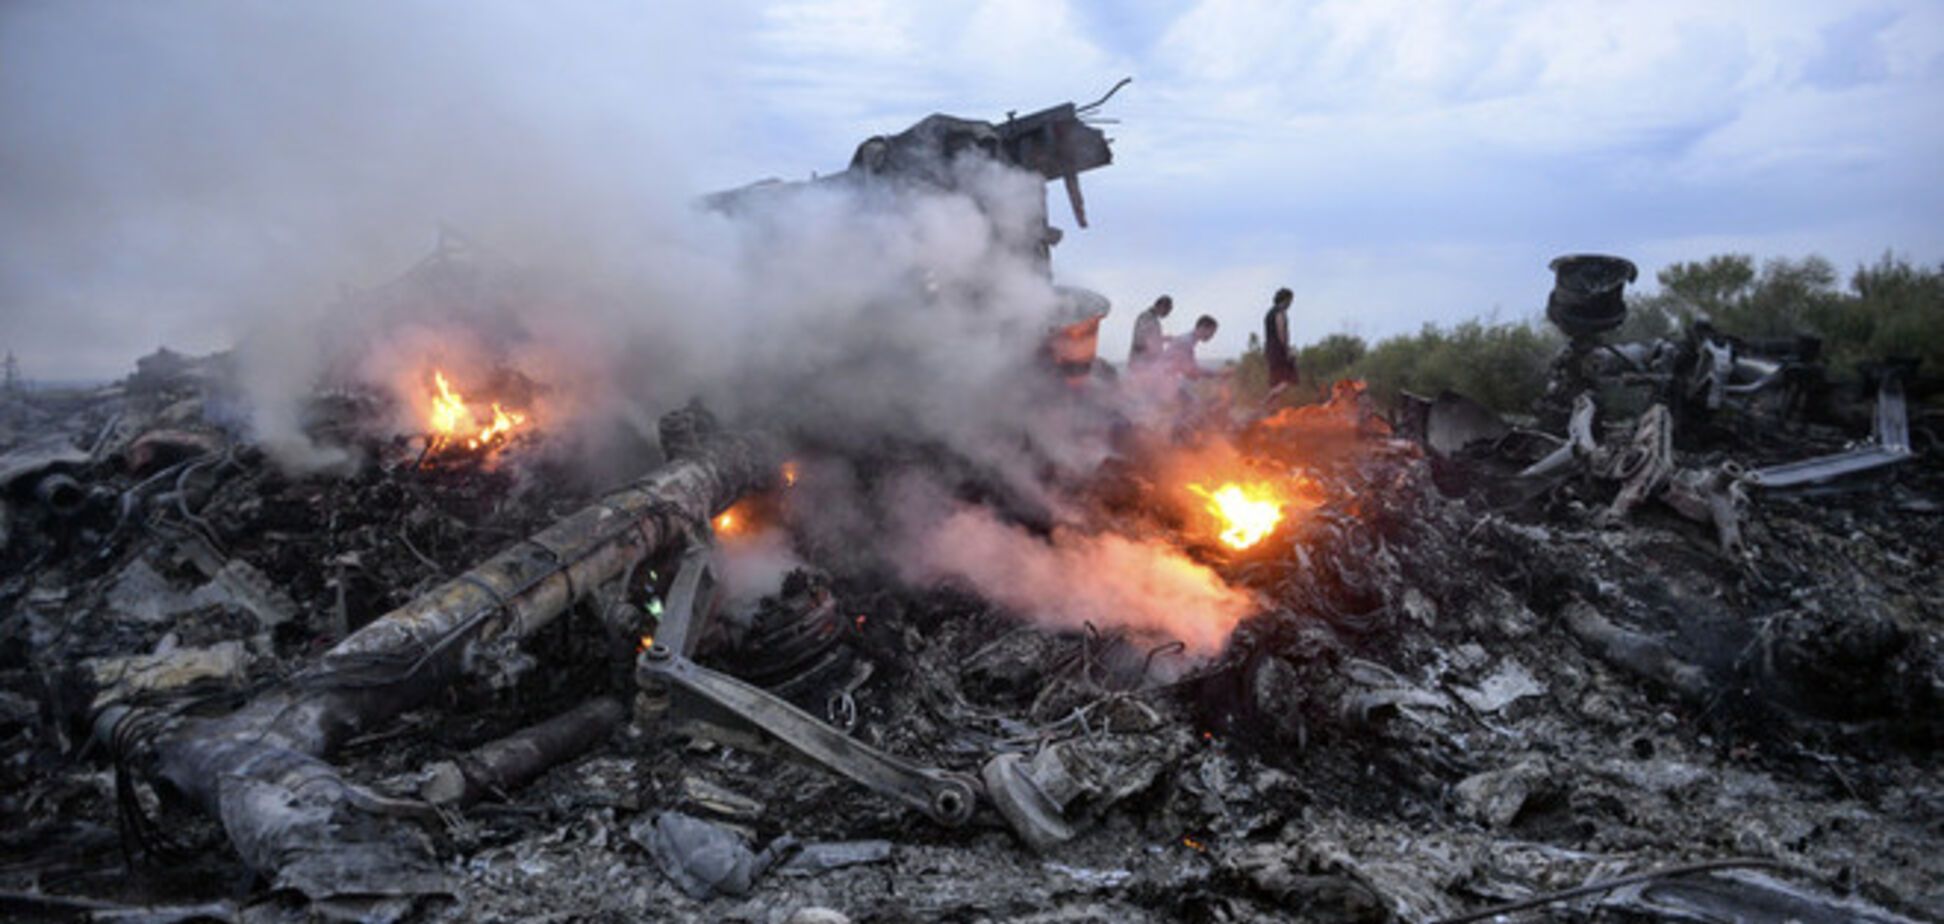 Блогер доходчиво доказал, что Boeing-777 сбили российским 'Буком': видеофакт